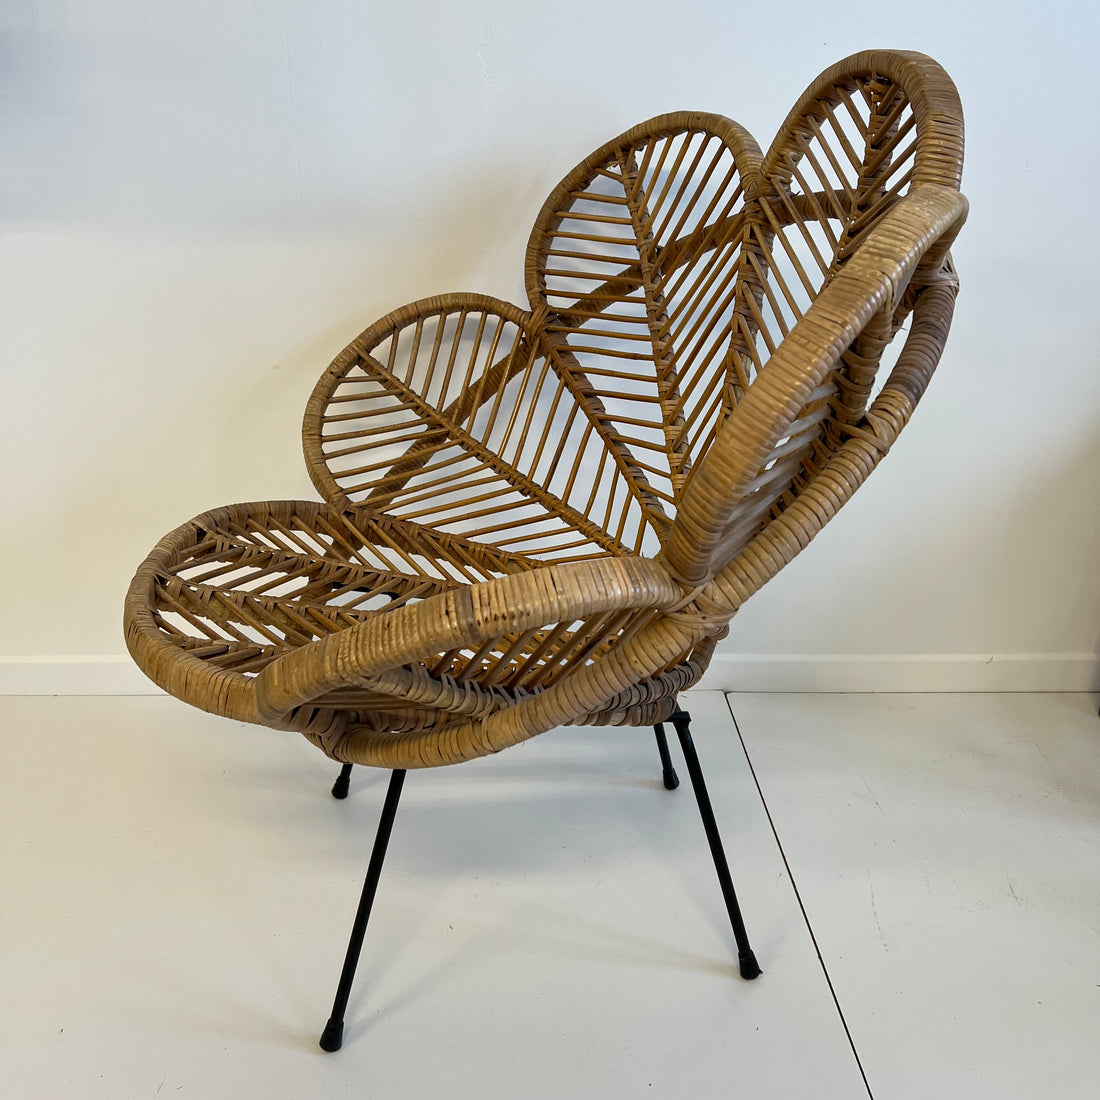 Fauteuil en forme de fleur, fauteuil fleur en rotin, fauteuil en rotin et  pieds en métal - Rotin Design